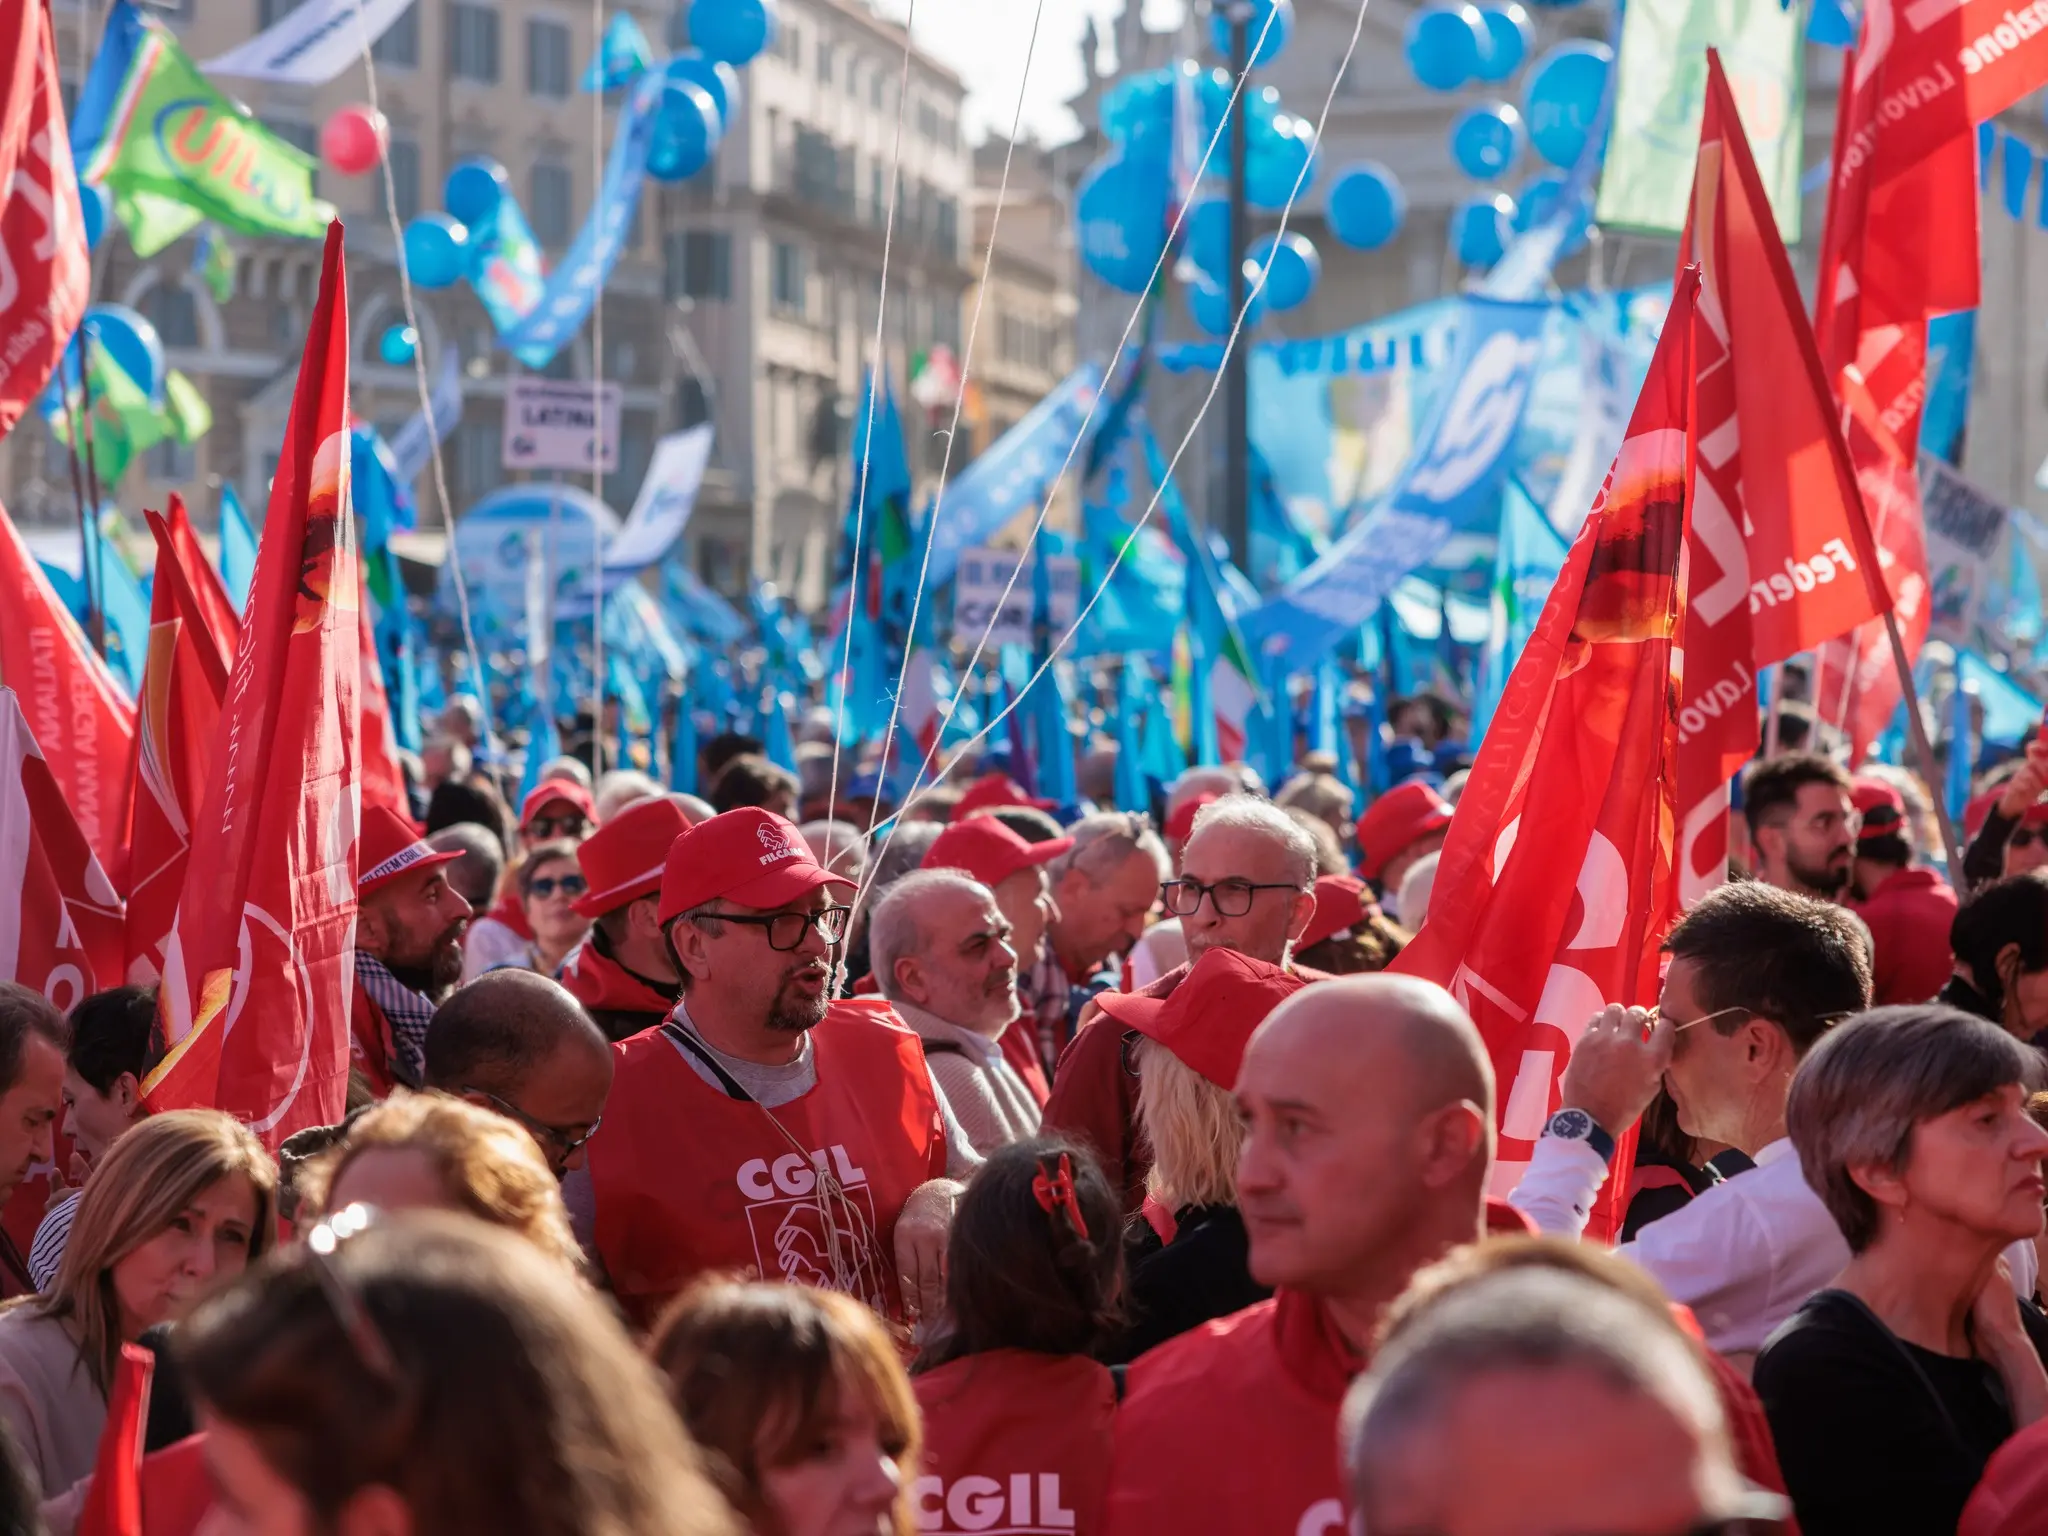 CGIL e UIL, il 24 novembre prosegue lo sciopero generale nelle regioni del Nord. Landini a Torino, diretta ore 10:30